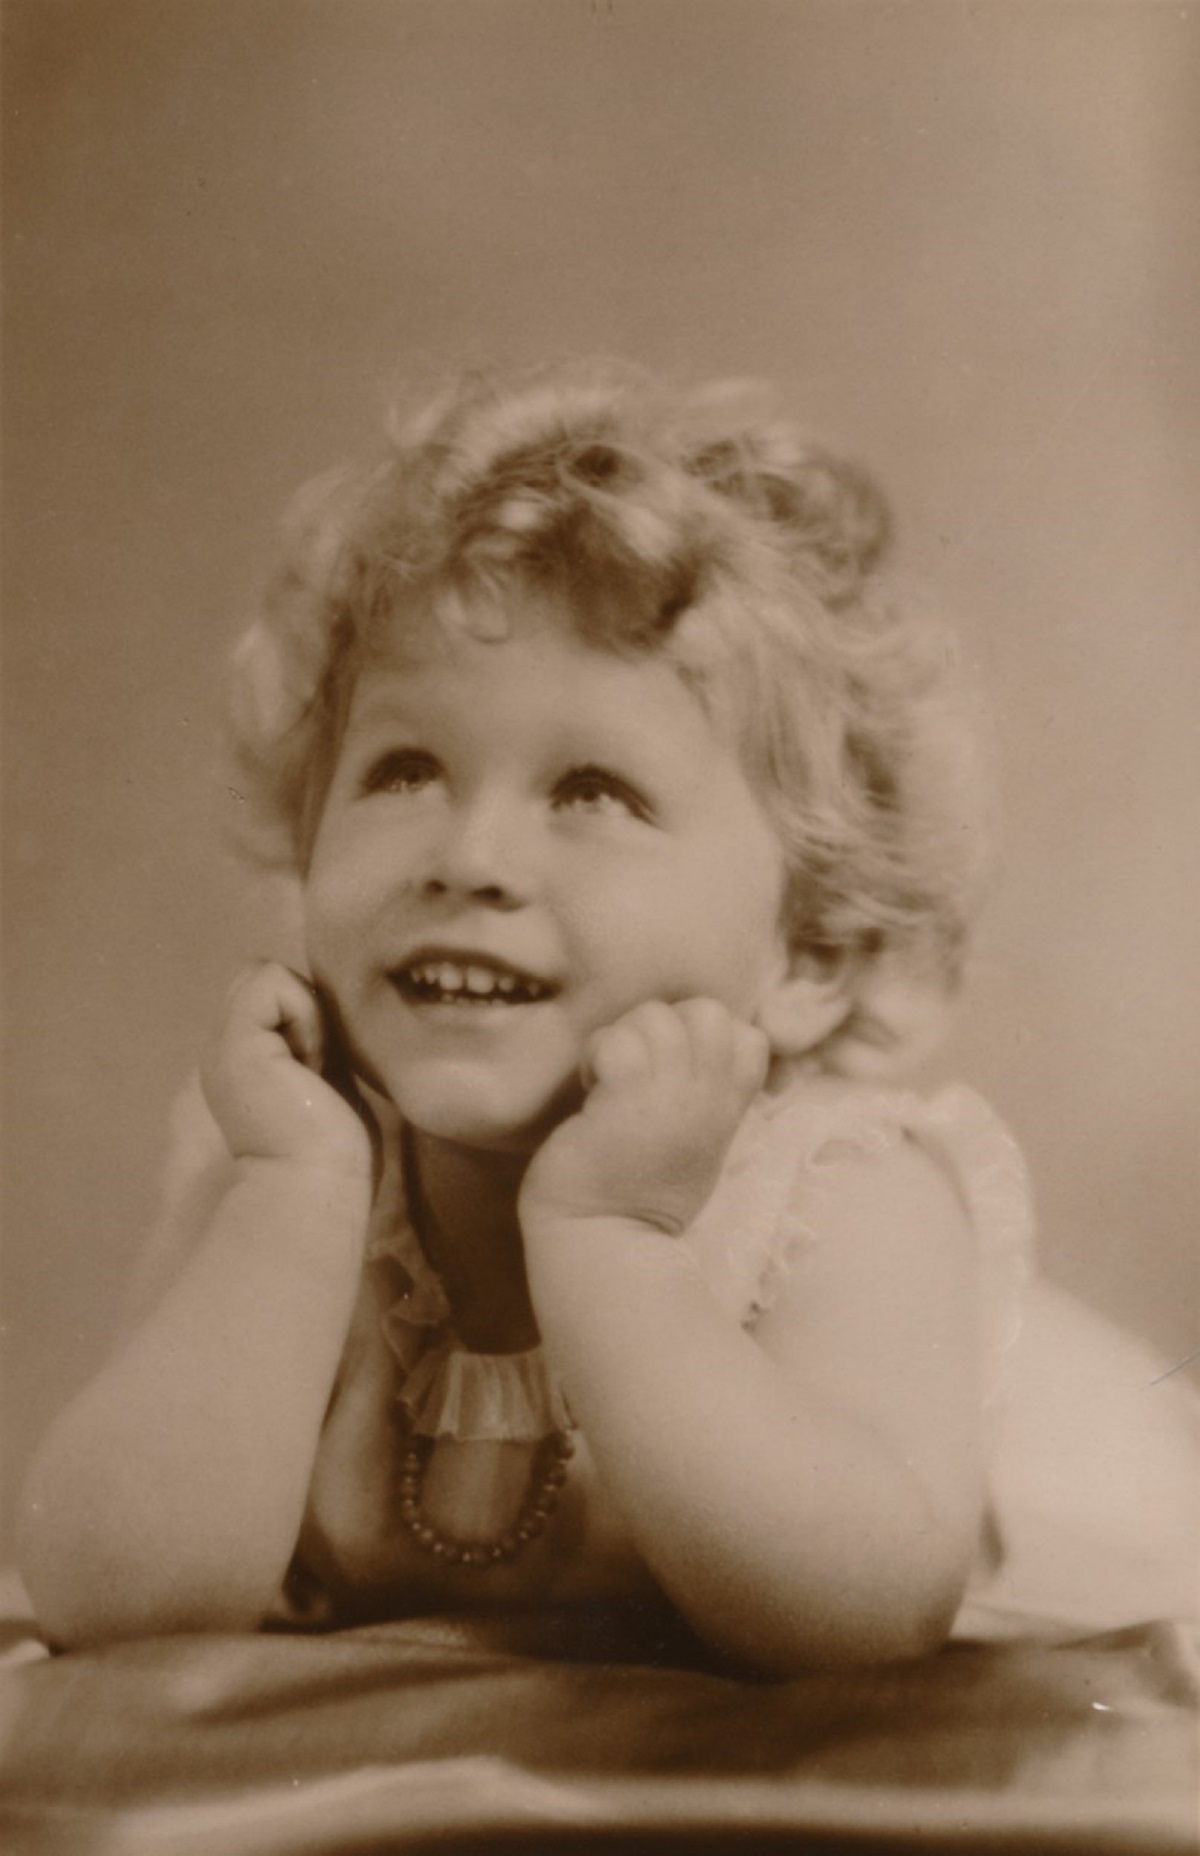 Regina Elisabeta în copilărie în 1929 la vârsta de trei ani